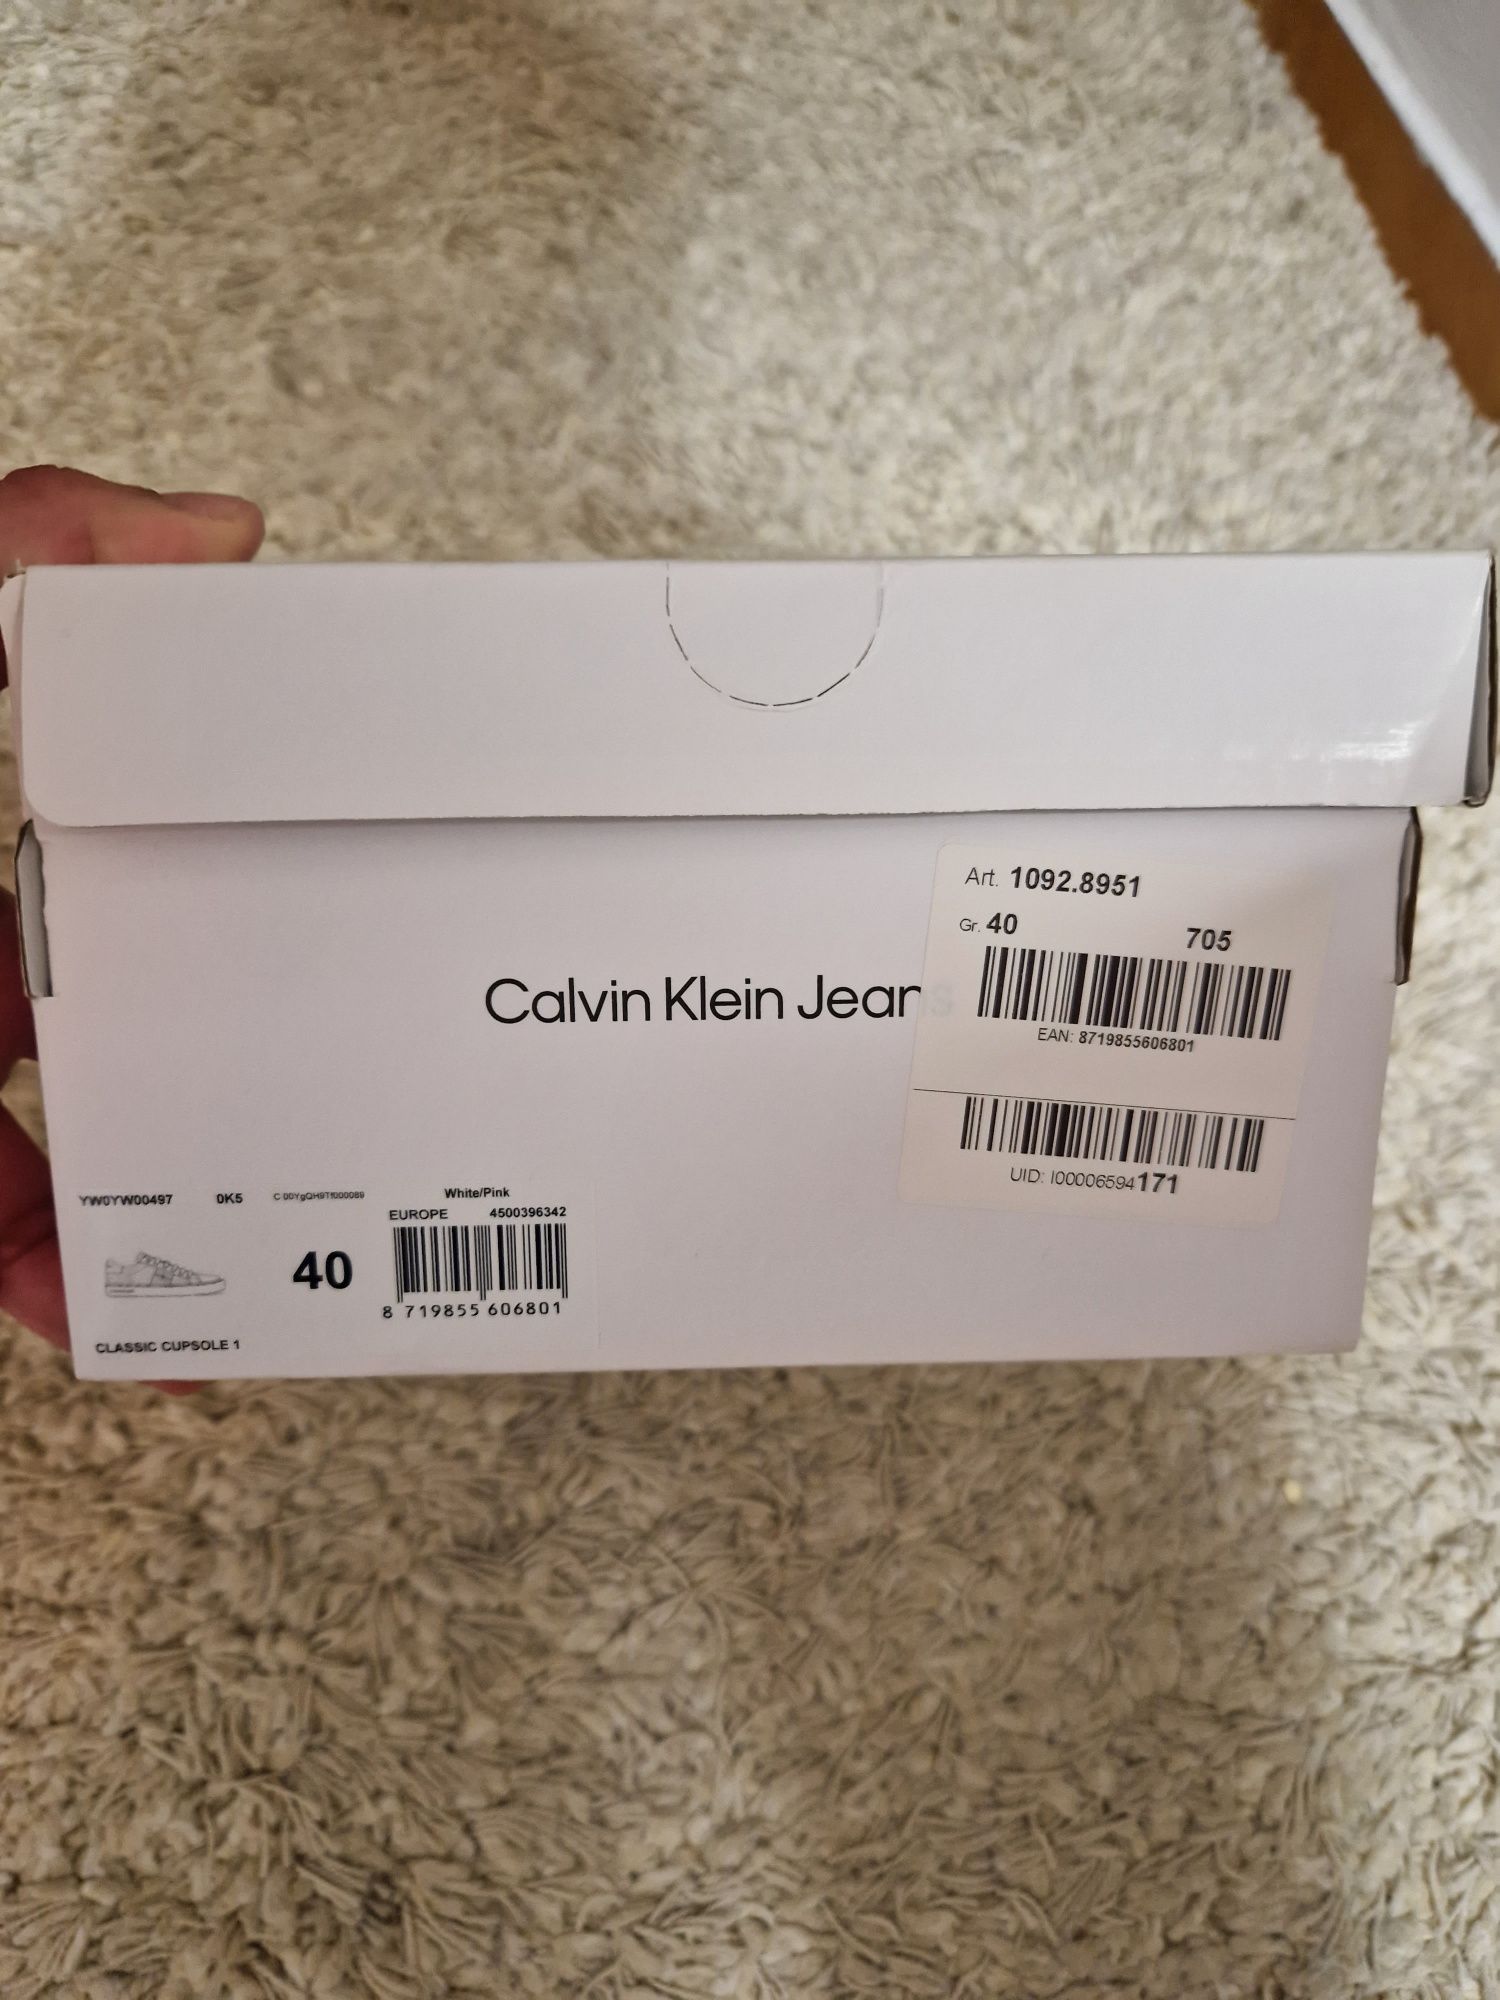 Kalvin Klein Jeans adidas 40